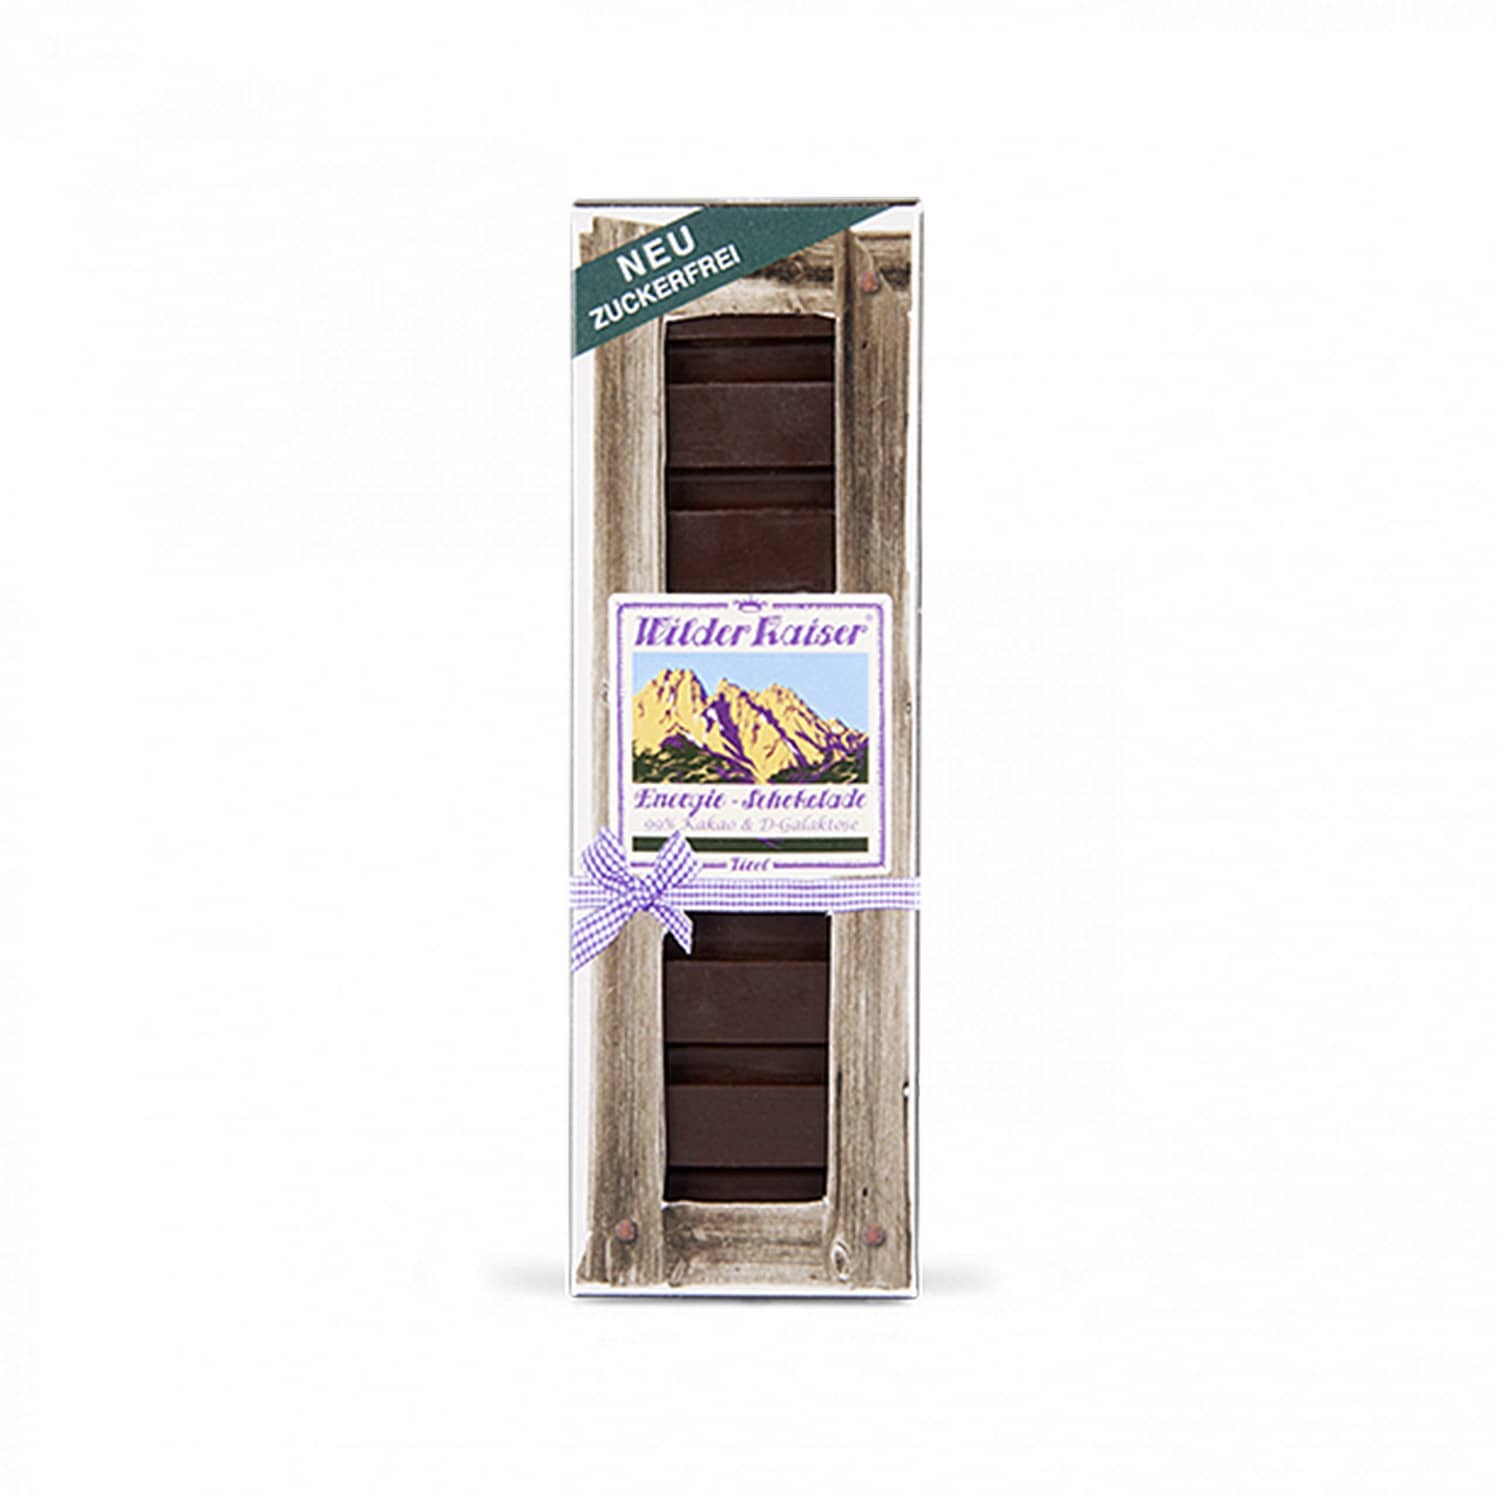 Wilder Kaiser Energie-Schokolade 25g